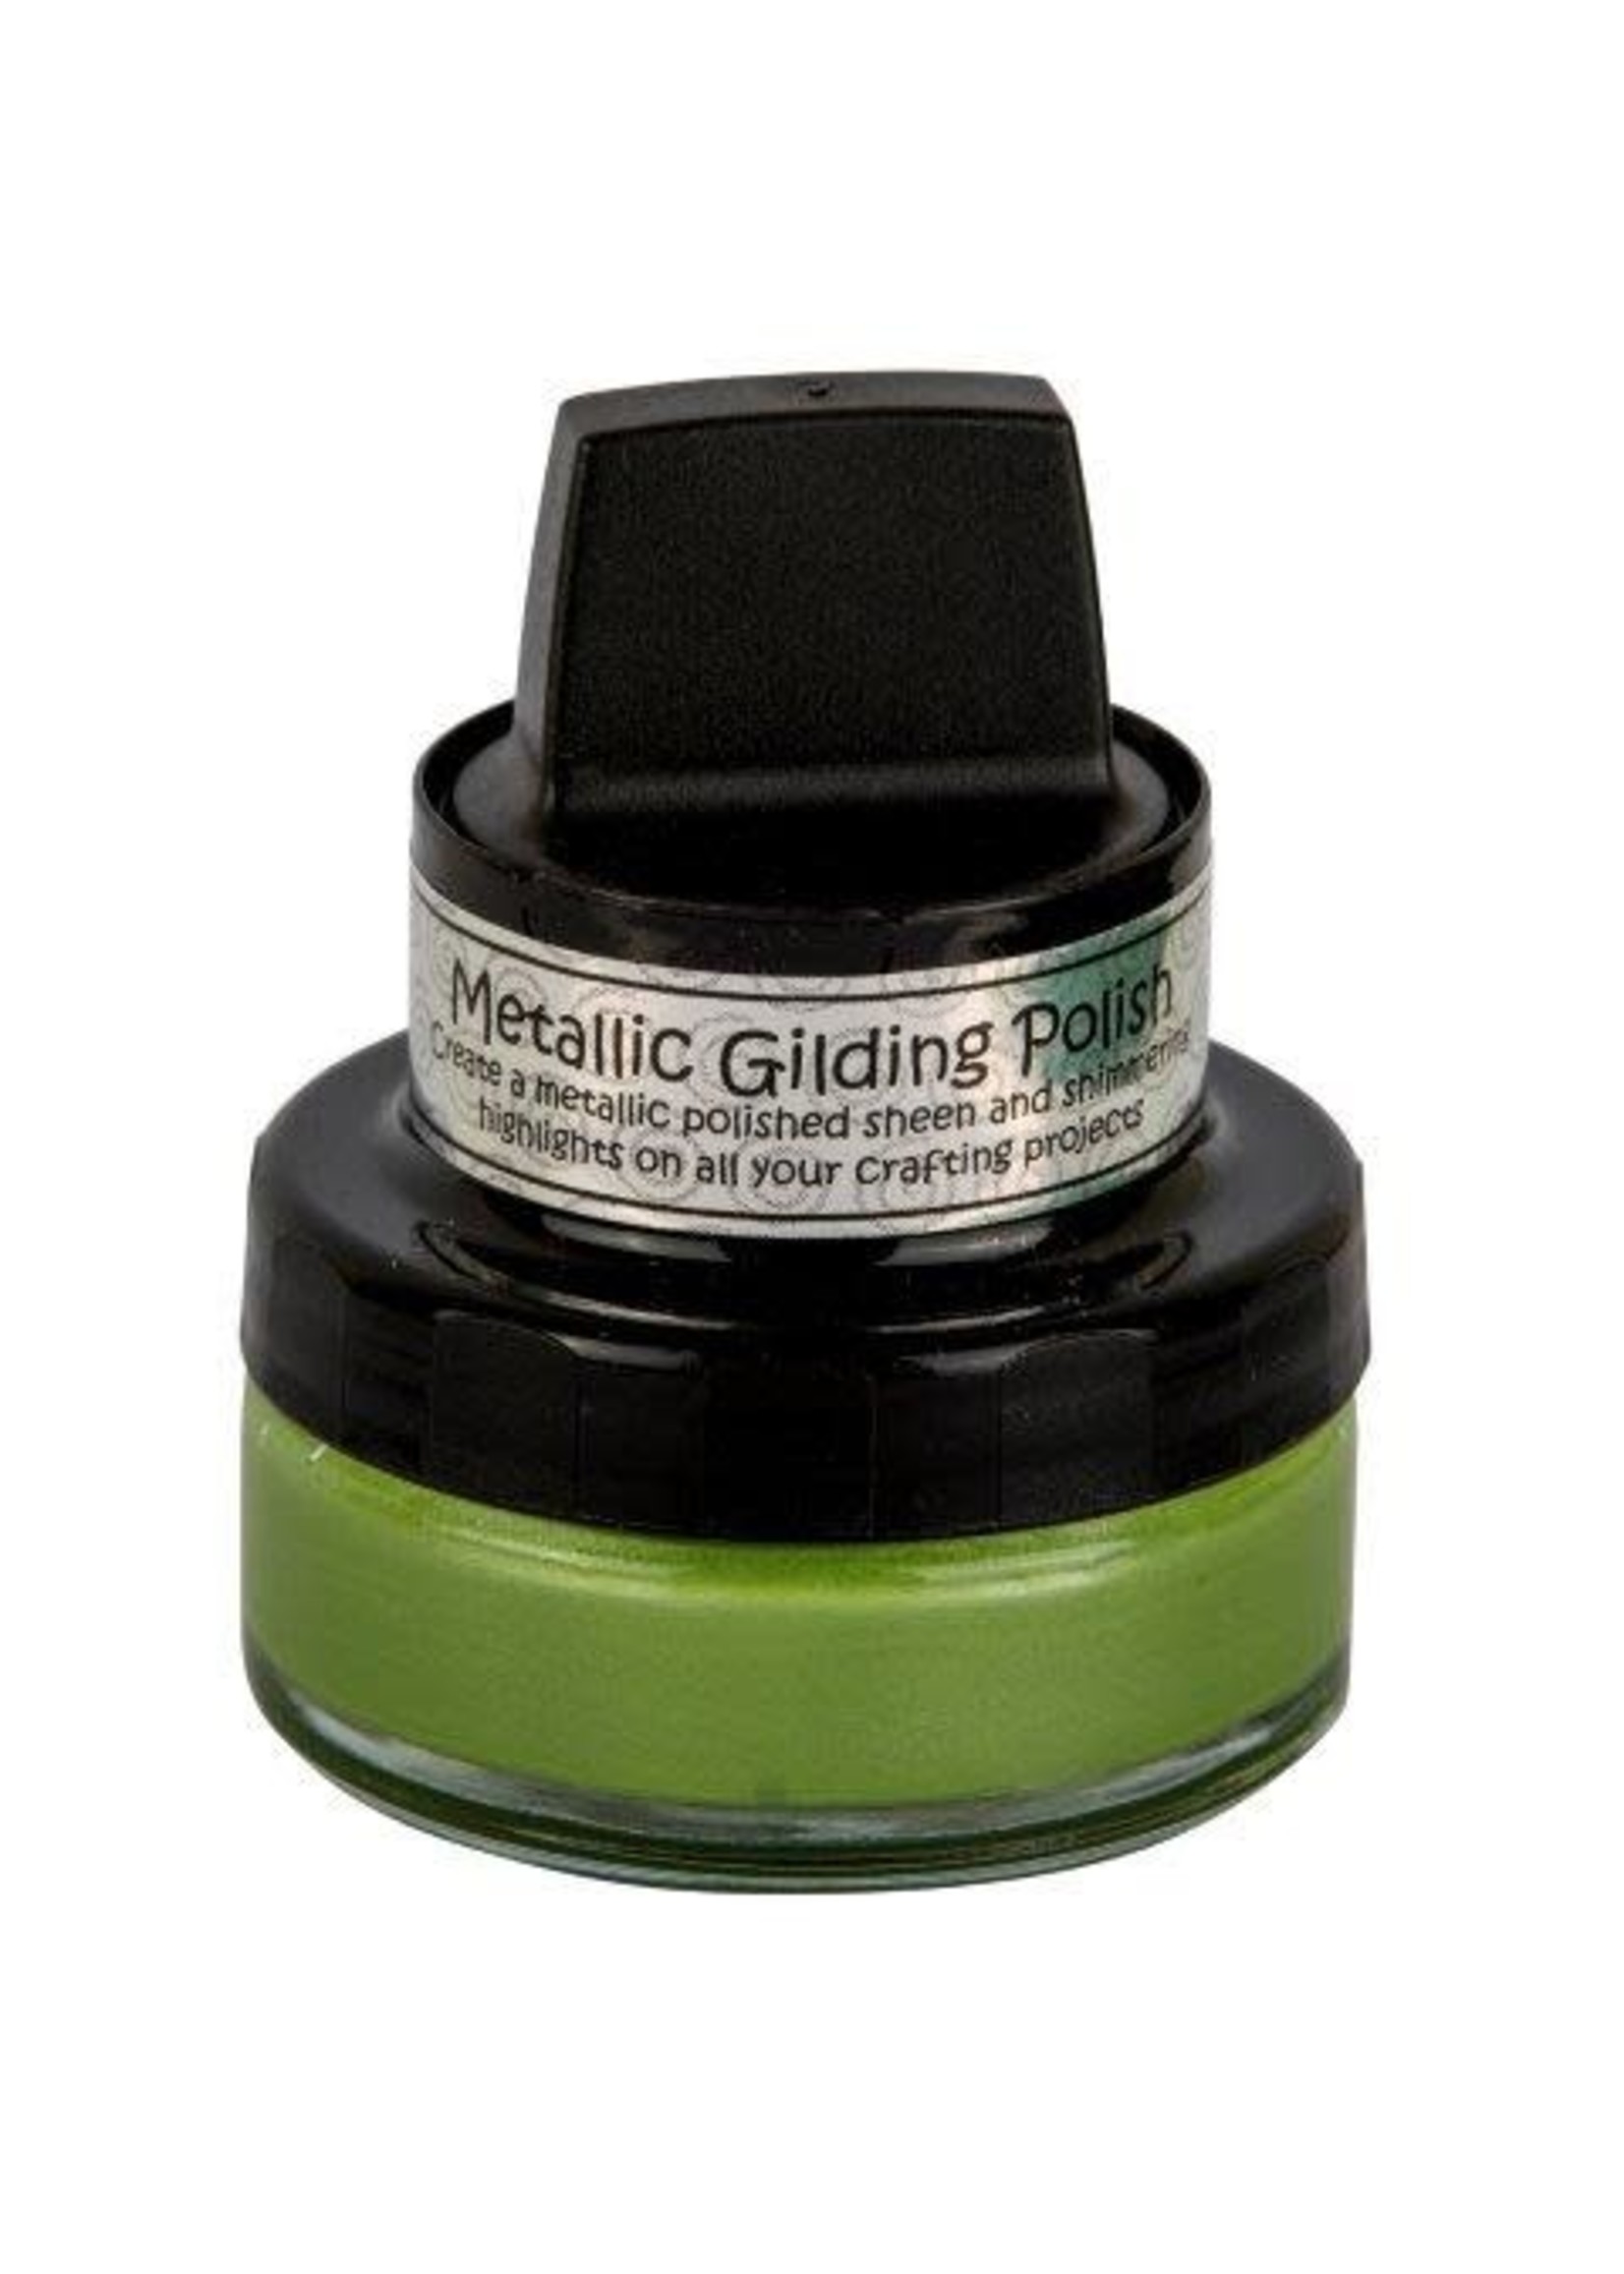 Cosmic Shimmer Metallic Gilding Polish: Citrus Green